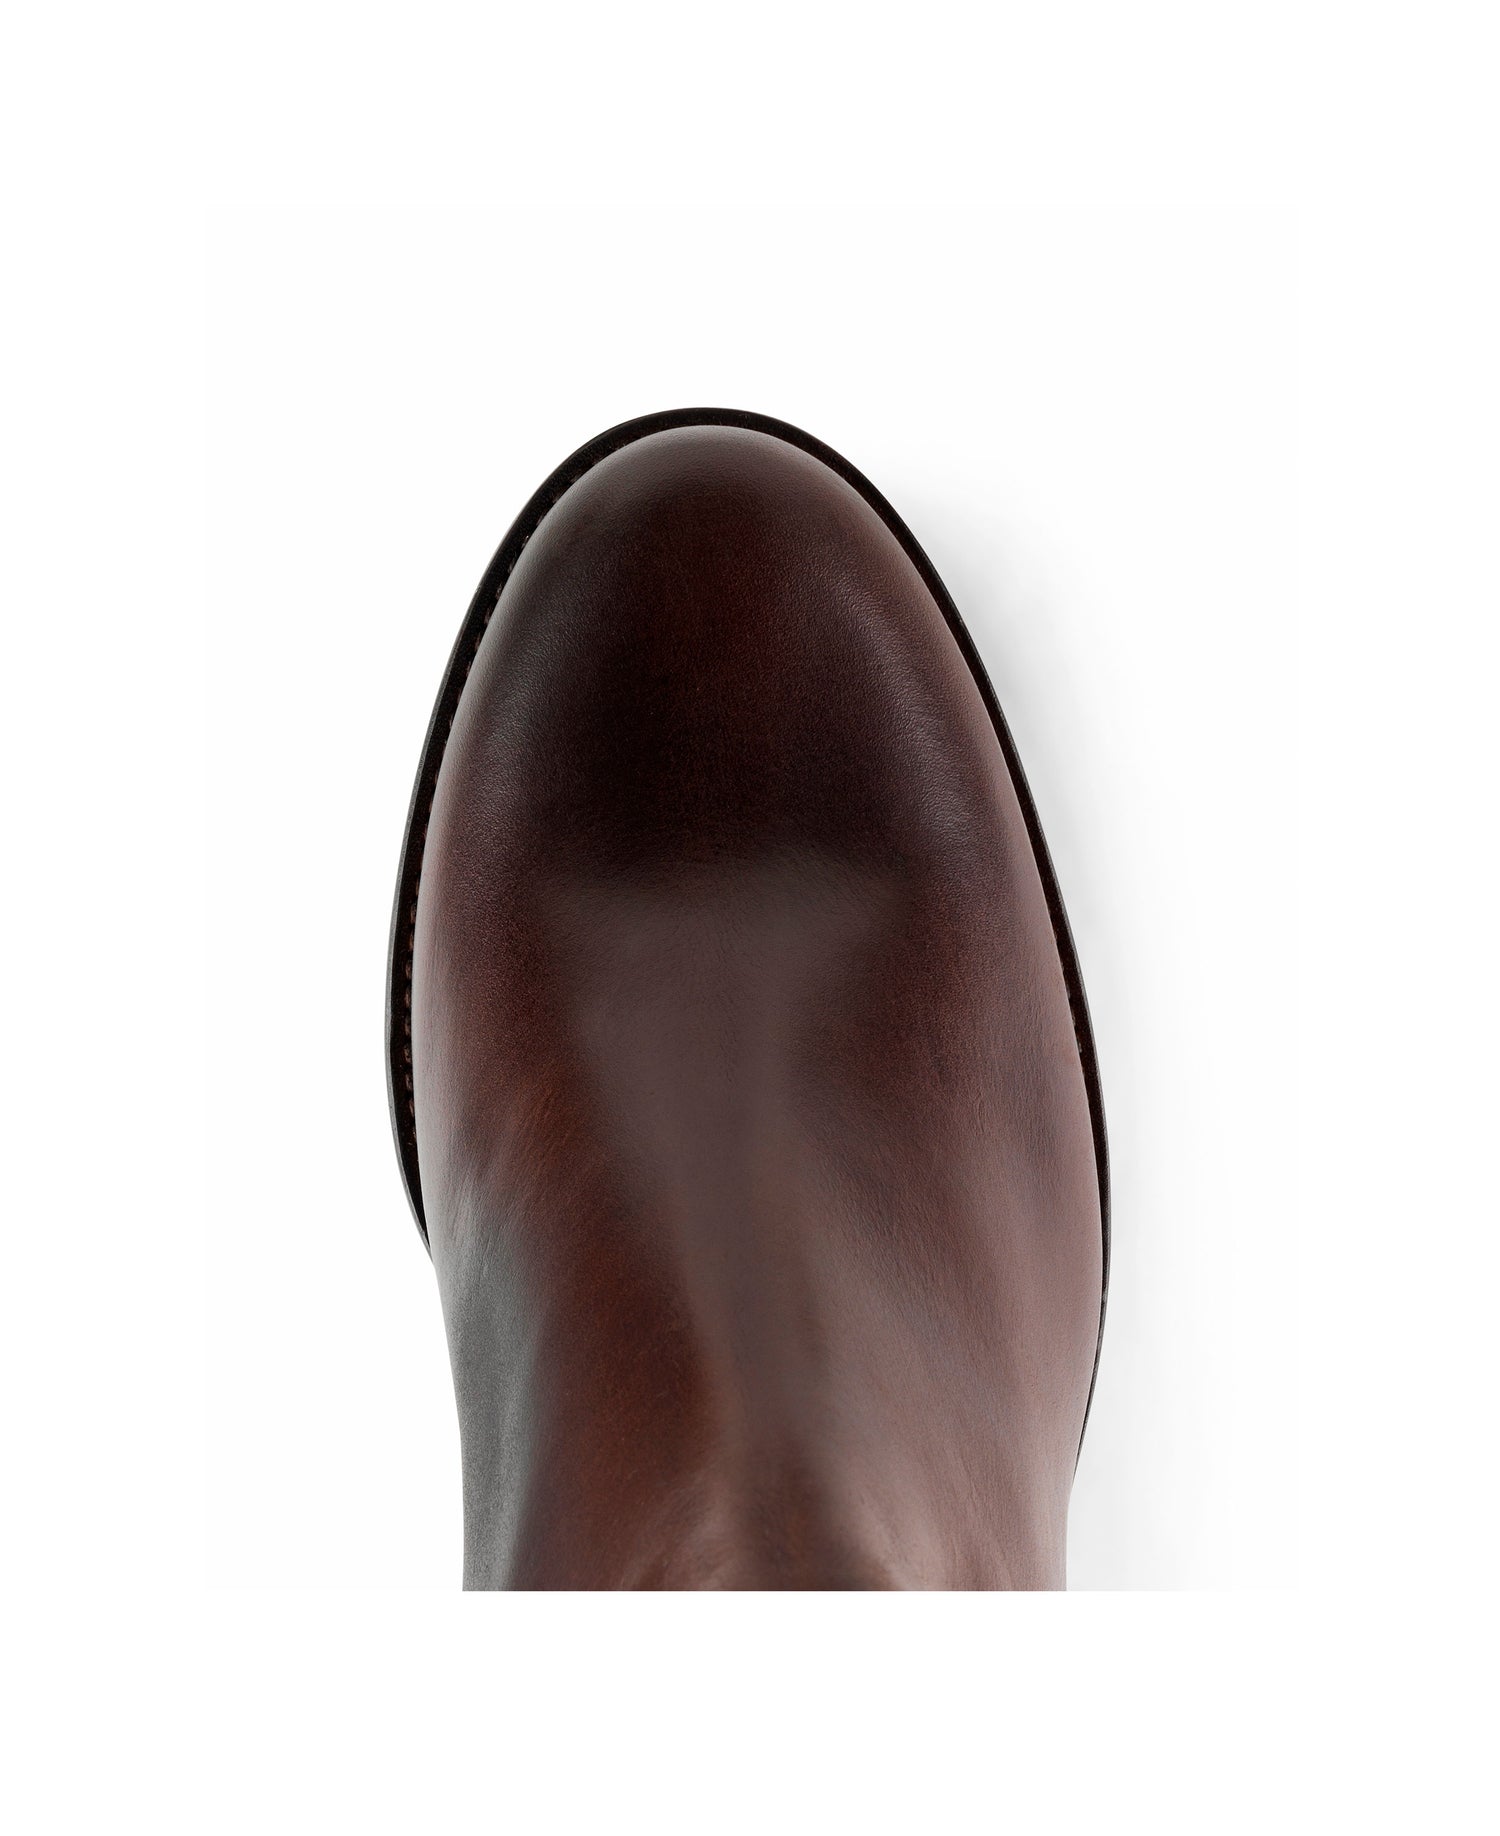 Regina Boot - Mahogany Leather